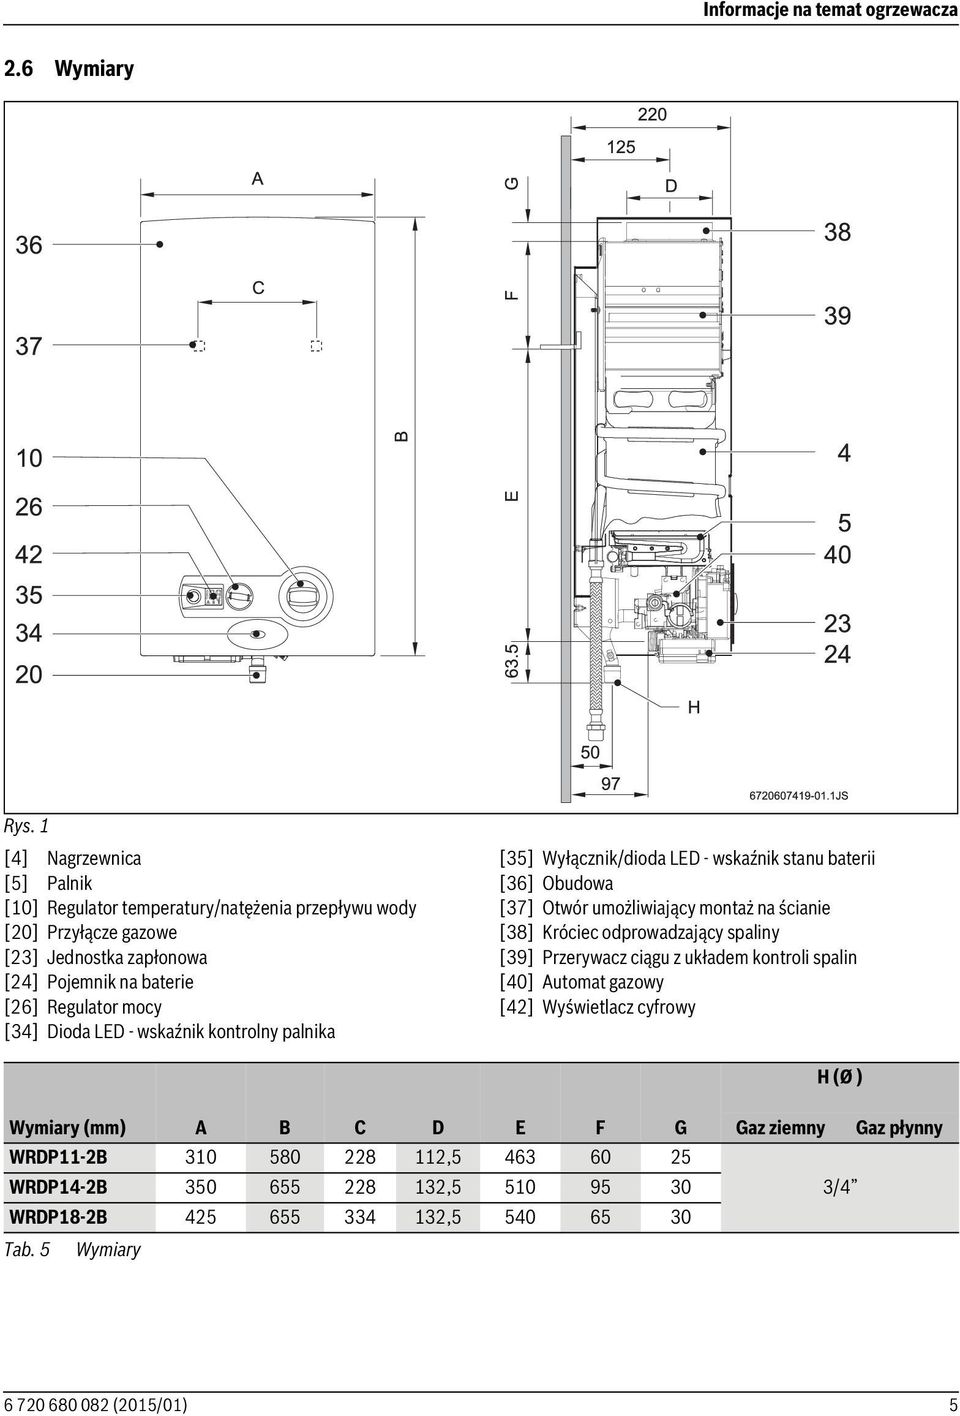 [34] Dioda LED - wskaźnik kontrolny palnika [35] Wyłącznik/dioda LED - wskaźnik stanu baterii [36] Obudowa [37] Otwór umożliwiający montaż na ścianie [38] Króciec